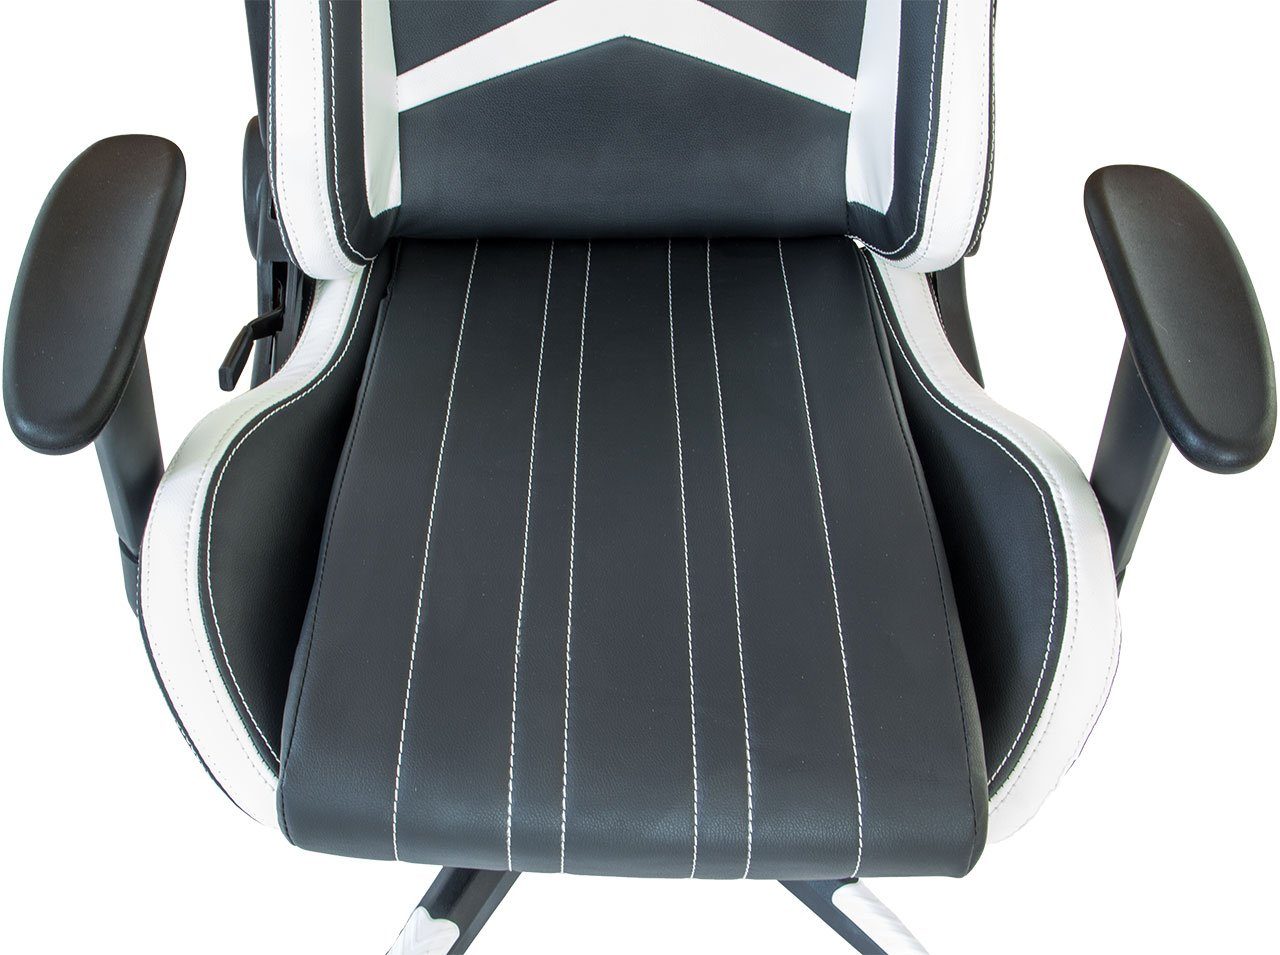 Gaming-Stuhl Gaming-Stuhl und mit Racing und Nacken- (Stück), Rückenkissen Wipp-Mechanismus Design, verstellbare Rückenlehne, Nachen- NATIV weiß-schwarz Rückenkissen Haushalt verstellbar,